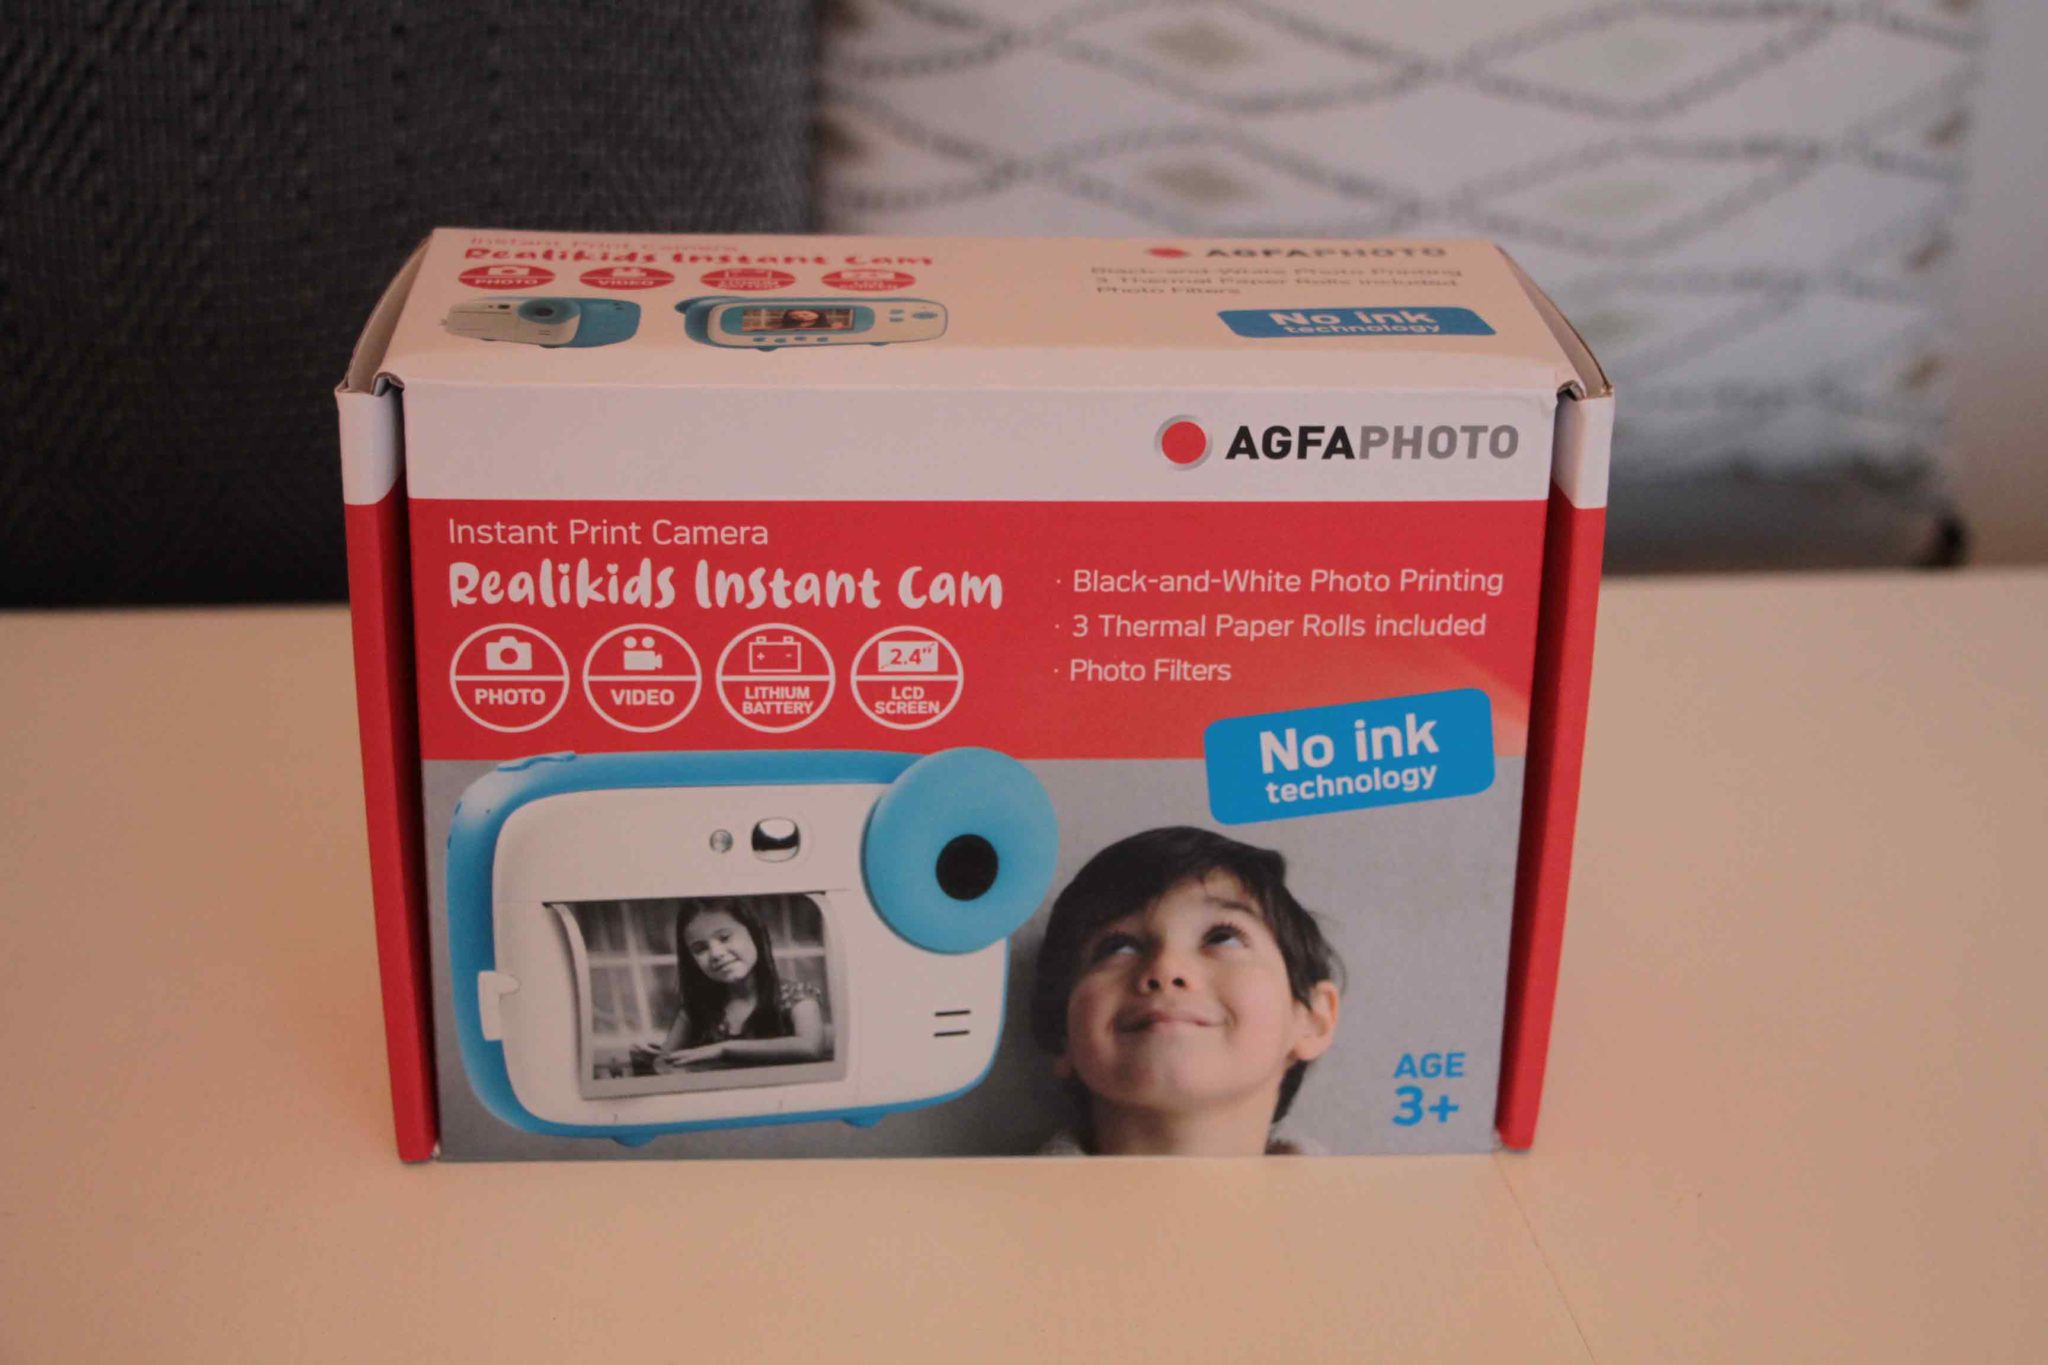 Realikids instant cam Agfaphoto: appareil photo pour les enfants